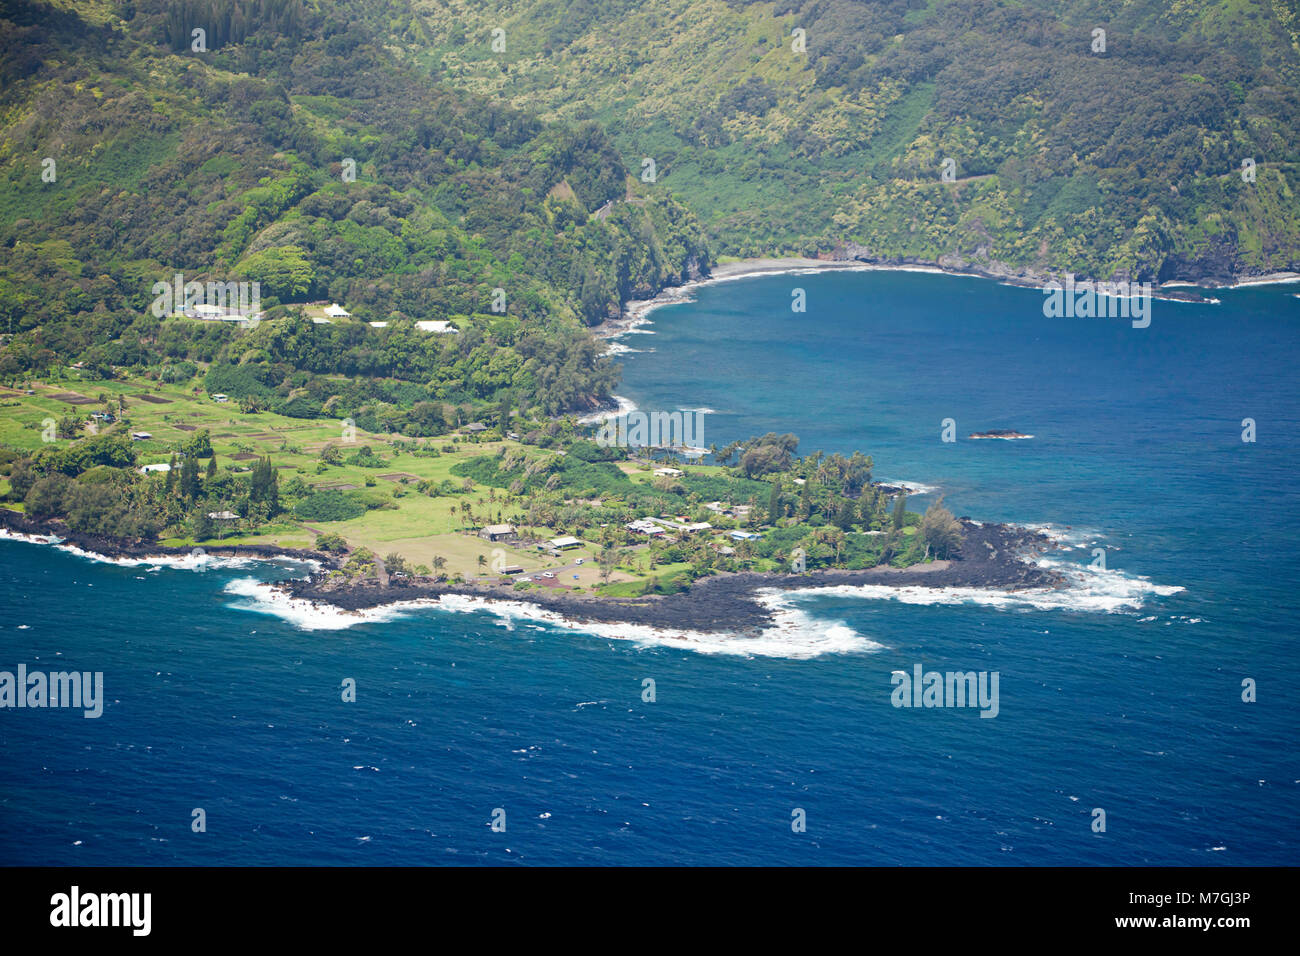 Une vue aérienne de la presqu'île, le long MauiÕs Keanae célèbre route de Hana. En 1946, la péninsule Keanae a été presque entièrement détruit par un tsunami. Banque D'Images